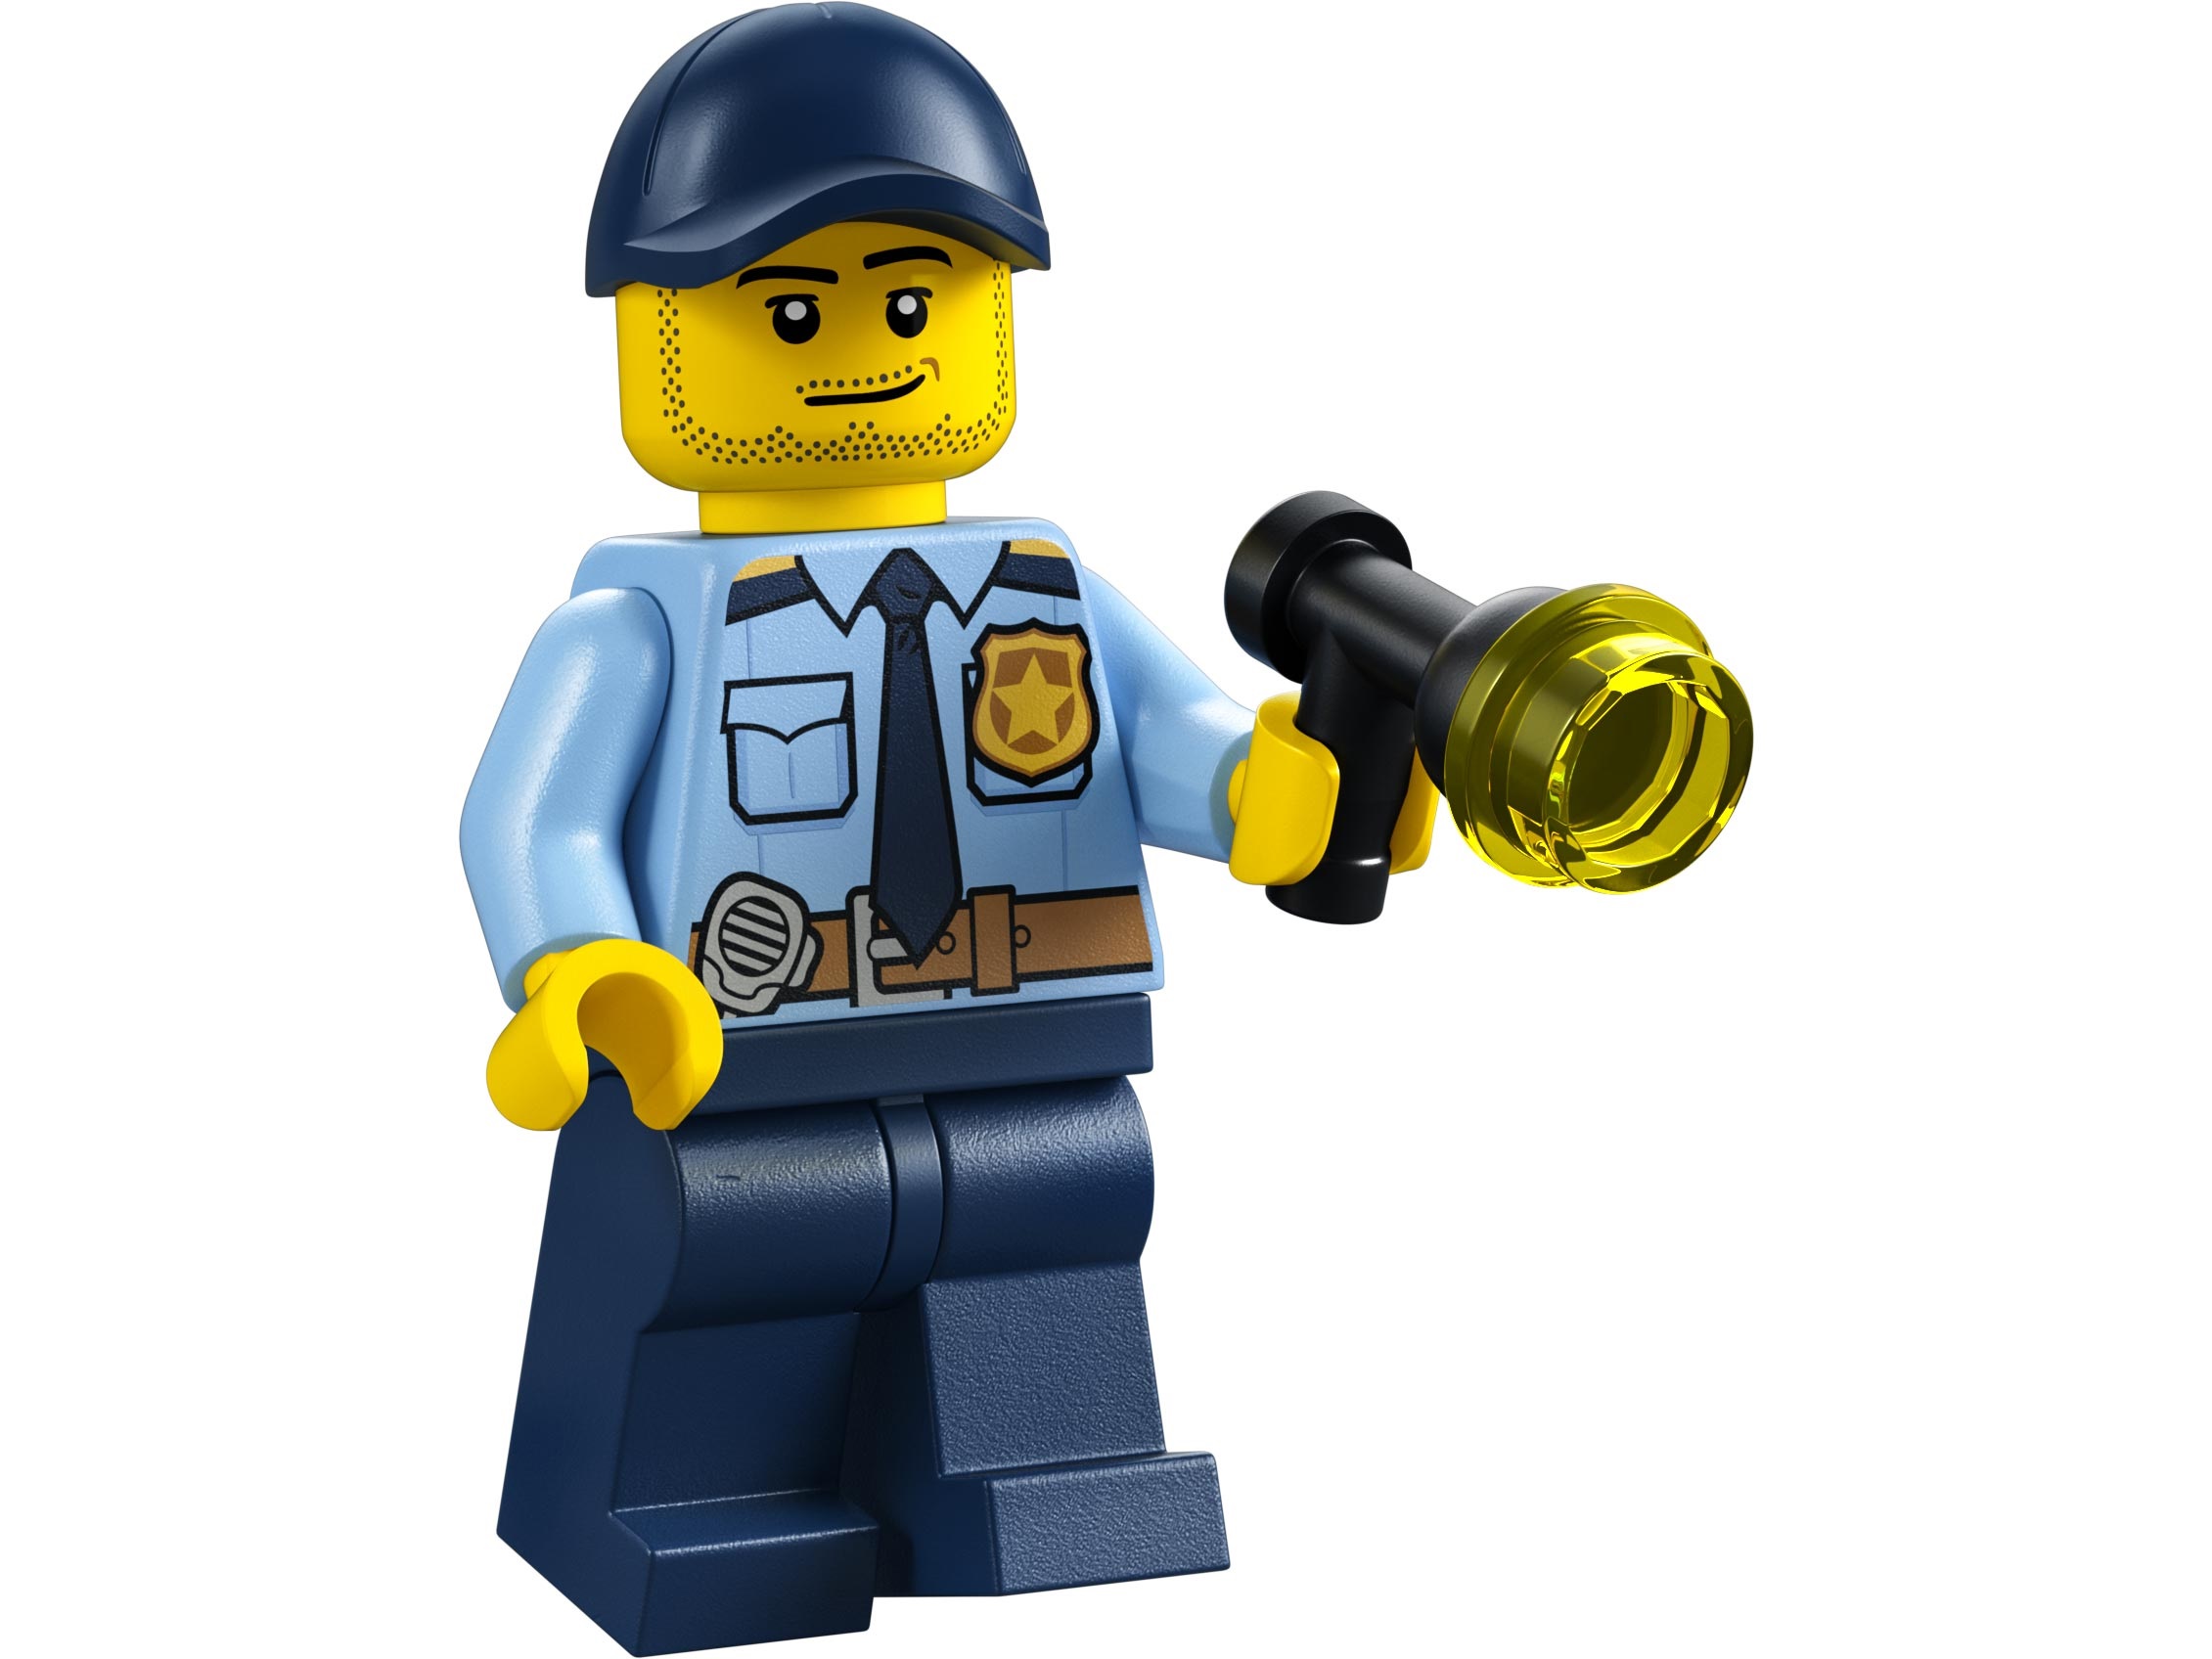 Lego City 60312 Полицейская машина